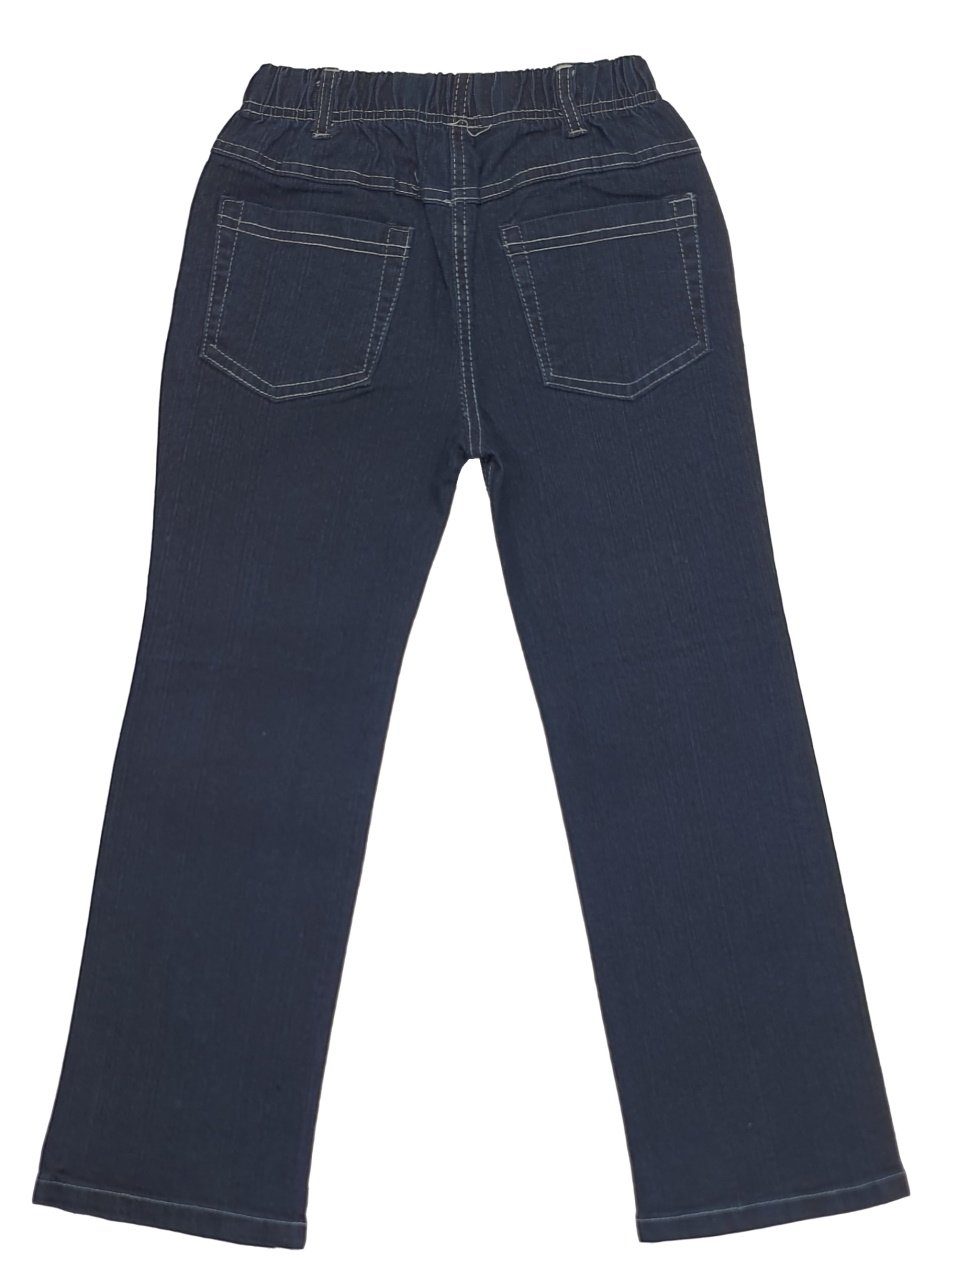 Bequeme Fashion Girls Jeans Jeans mit Gummizug, M32 Bequeme rundum Mädchen